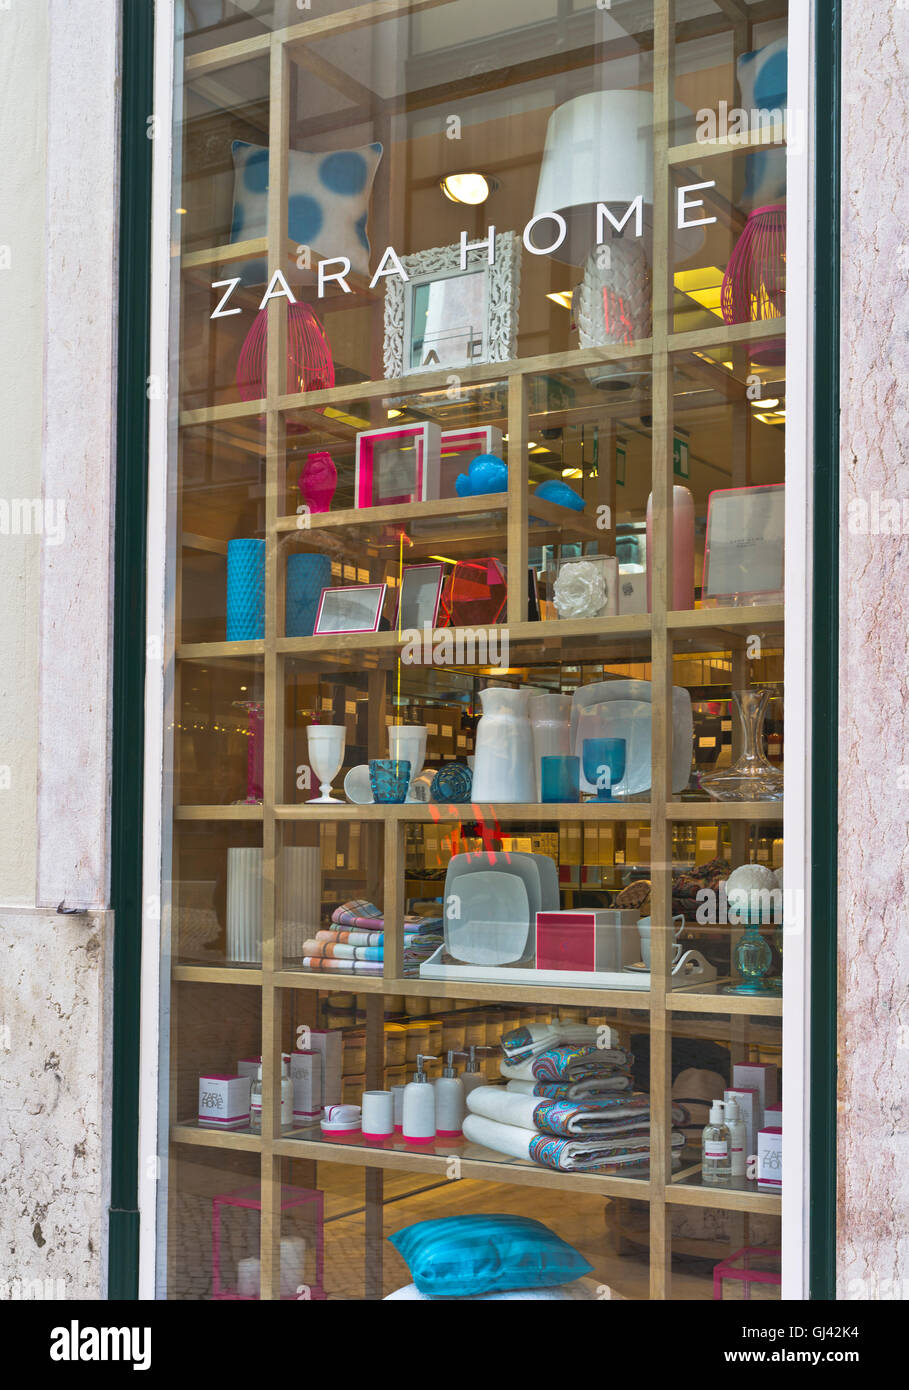 Zara home Banque de photographies et d'images à haute résolution - Alamy